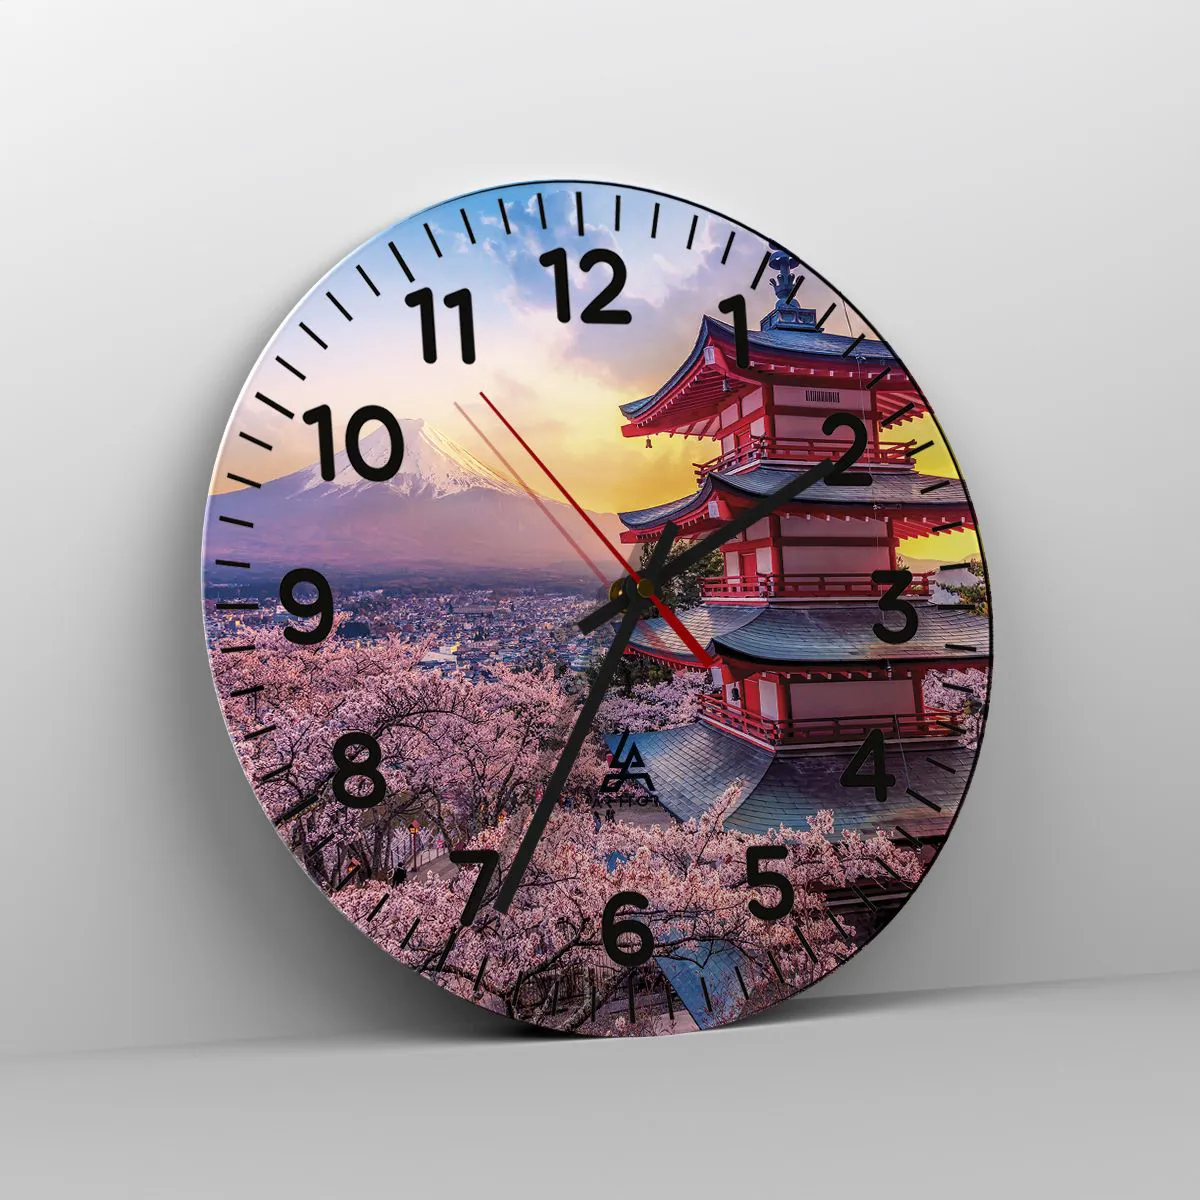 Reloj de pared Arttor - Estilo japonés - Esfera sin numeración, con rayas,  Forma: Circular - 30x30 cm - Paisaje, Lago, Japón